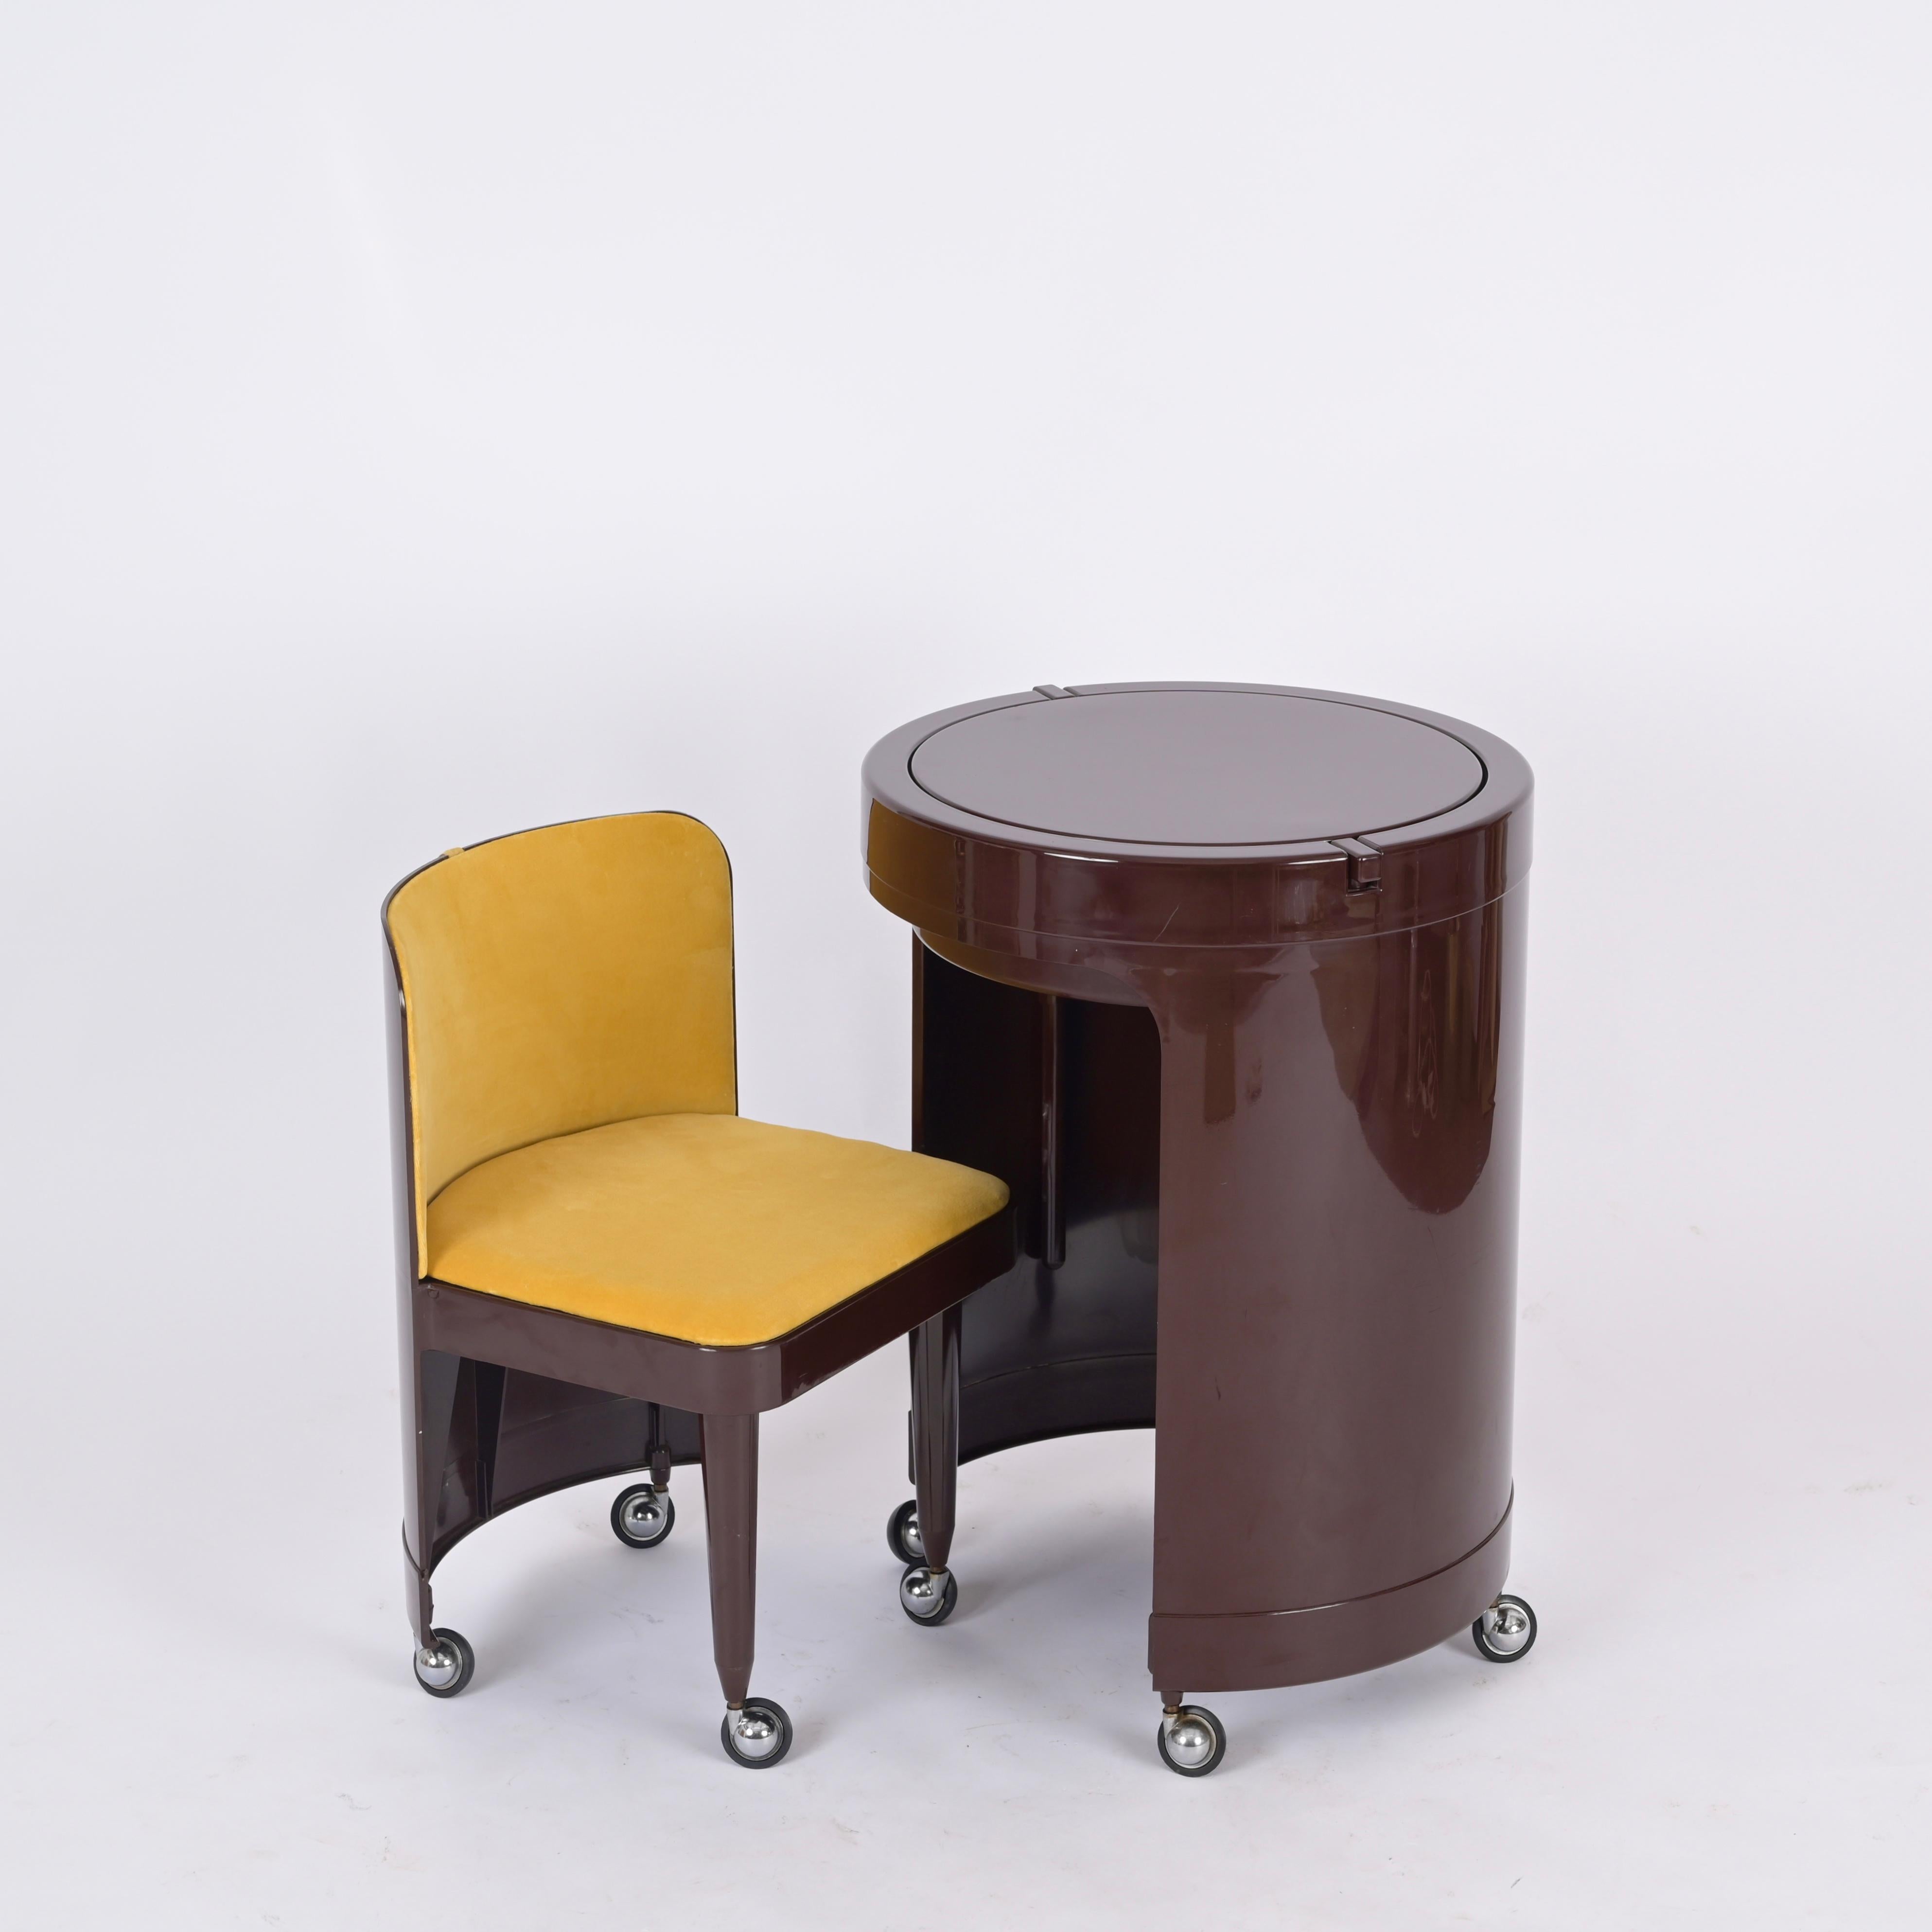 Fantastique table de toilette Condit entièrement d'origine et dans des conditions étonnantes dans une magnifique couleur marron avec chaise en velours jaune et miroir. Cet objet emblématique a été conçu en Italie dans les années 1970 et est signé